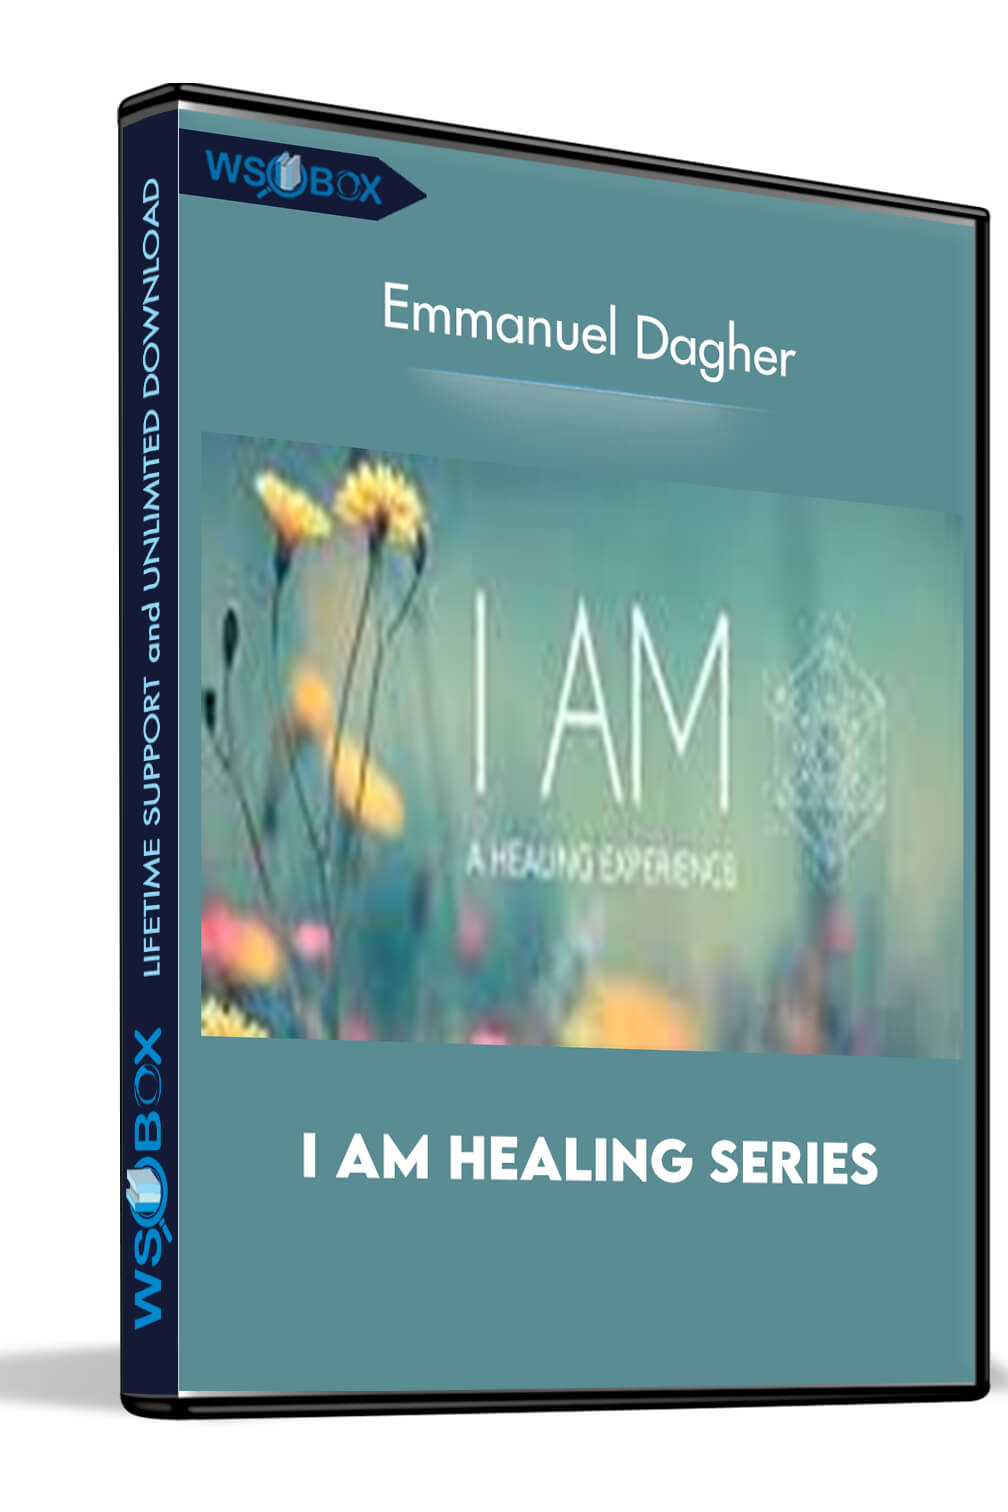 I Am Healing Series - Emmanuel Dagher